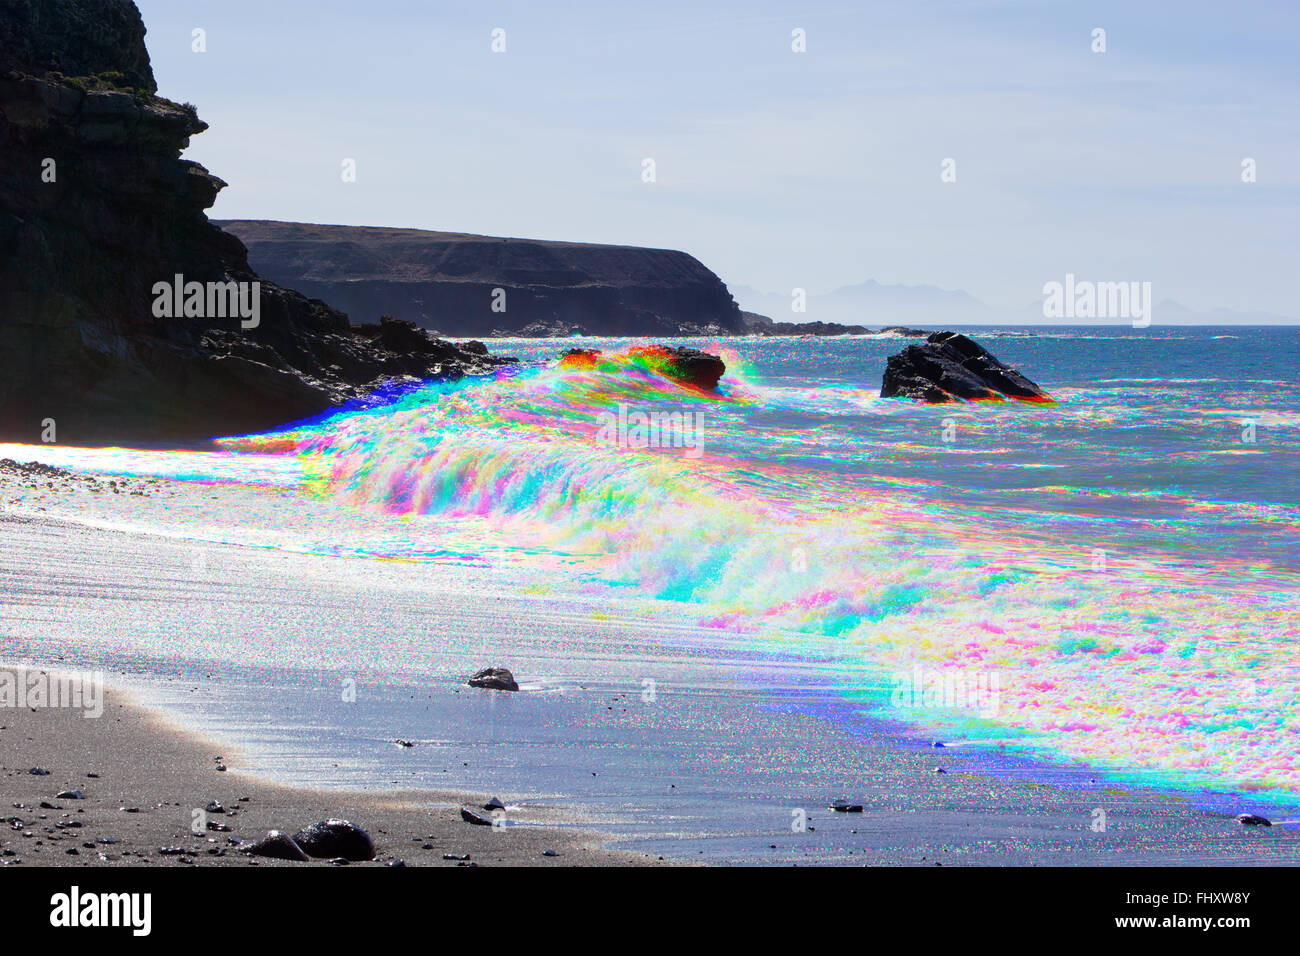 Fotografía de combinación de tres imágenes de colores separados de las olas rompiendo en la playa de Ajuy, Fuerteventura, Islas Canarias, España Foto de stock